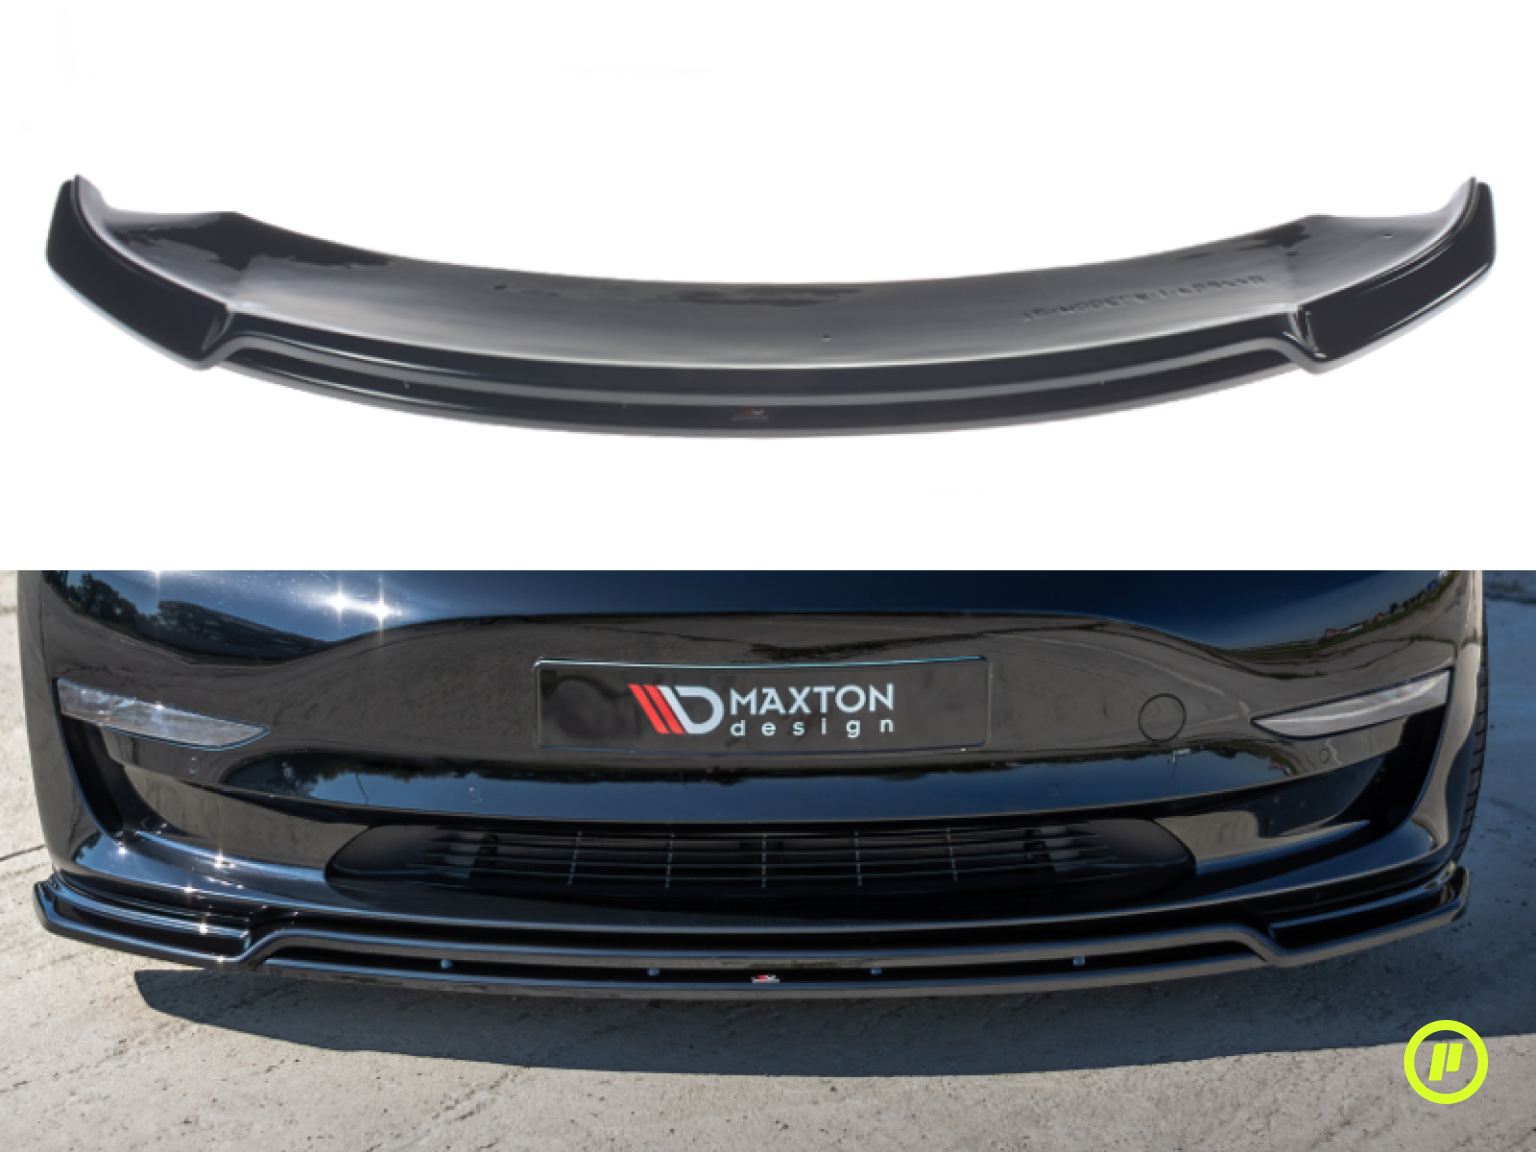 Maxton Design - Front Splitter v2 for Tesla Model 3 (2017+)